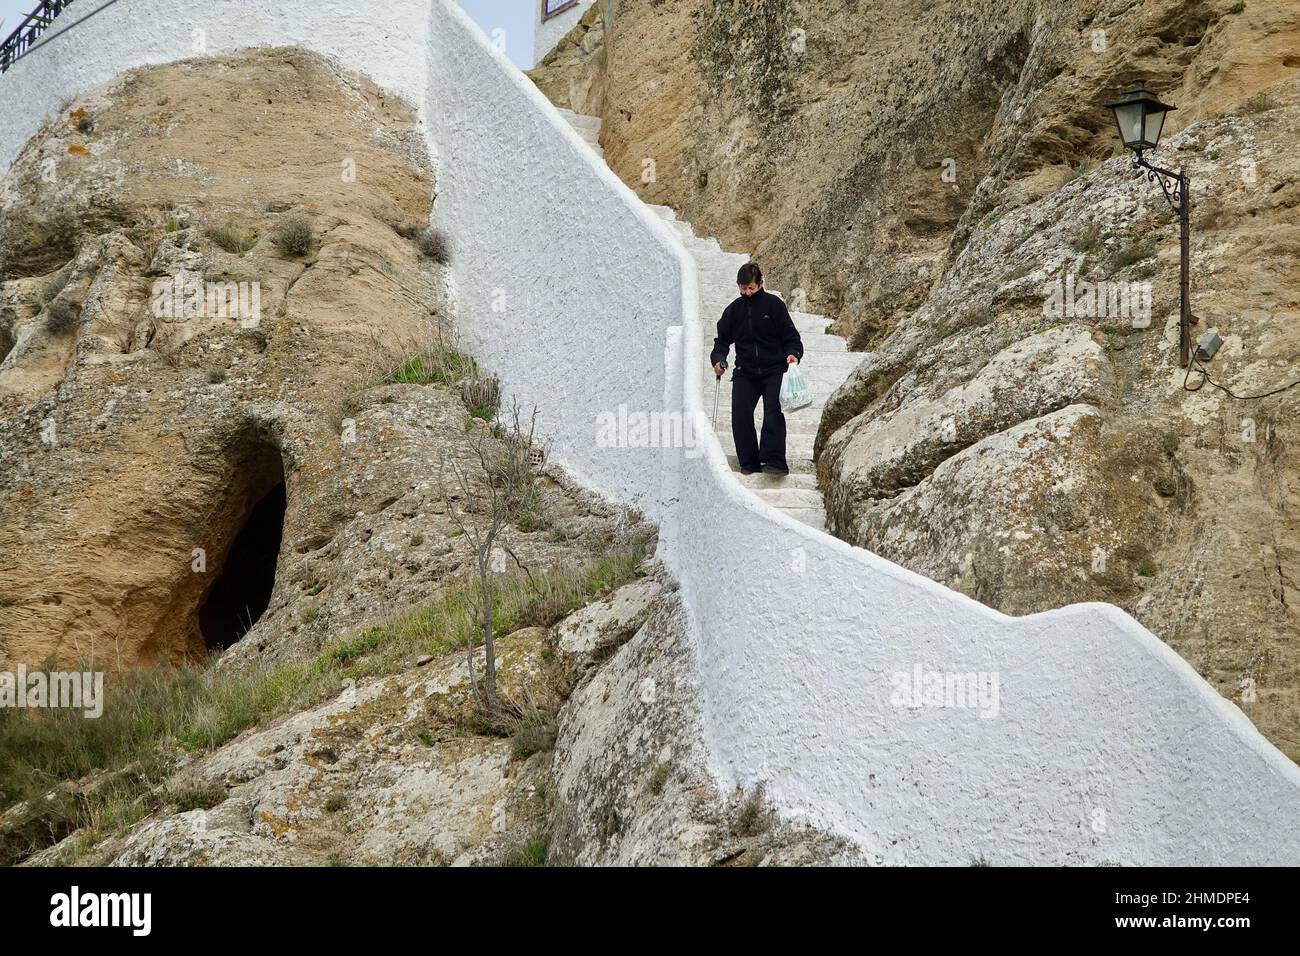 Iznájar, Cordoue-Espagne; 23 janvier 2022: Personne âgée avec canne marchant dans un escalier en pierre blanche avec difficulté Banque D'Images